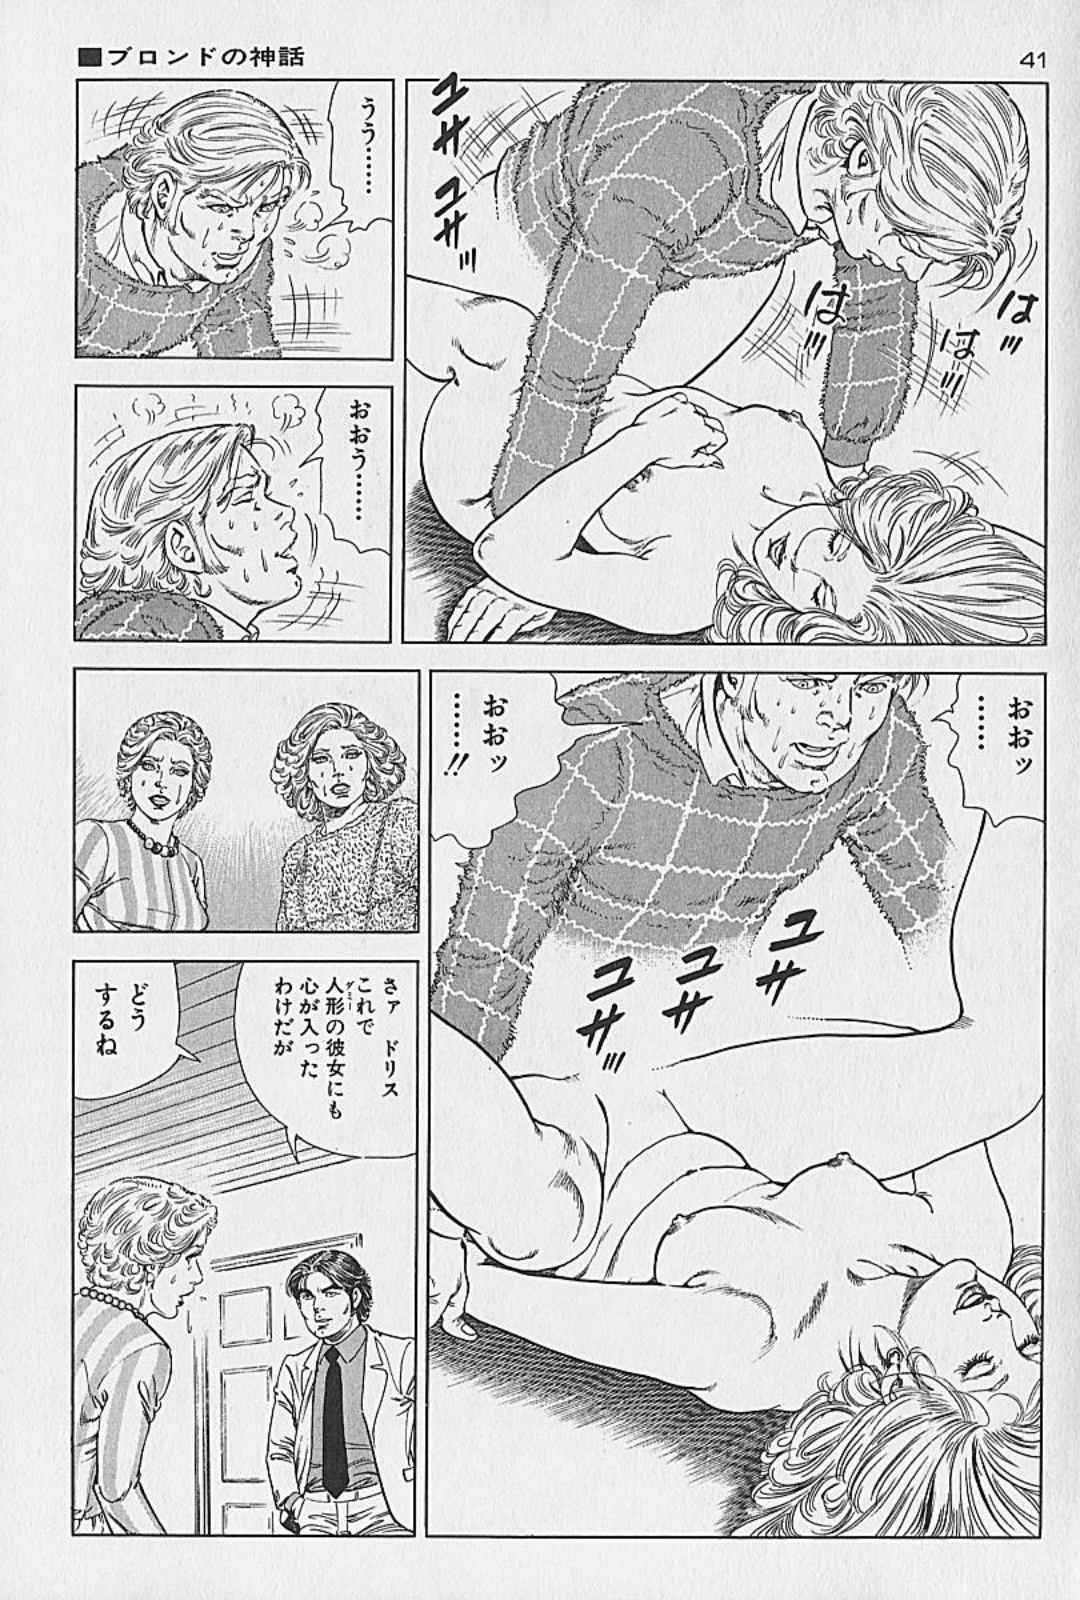 [Kano Seisaku, Koike Kazuo] Jikken Ningyou Dummy Oscar Vol.12 [叶精作, 小池一夫] 実験人形ダミー・オスカー 第12巻